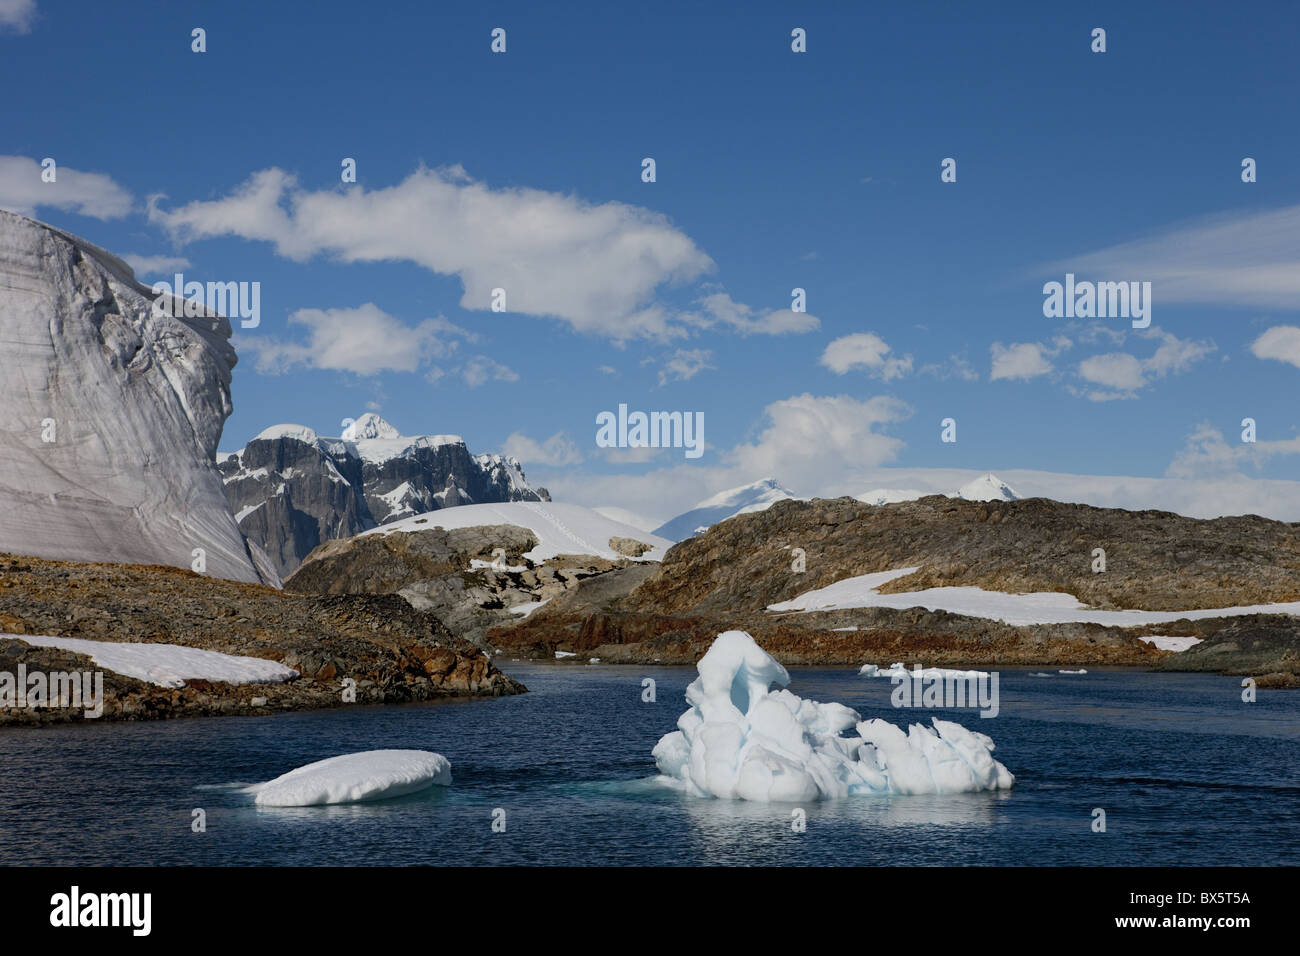 Glacier près de la station de recherche antarctique, Vernadsky, péninsule antarctique, régions polaires Banque D'Images